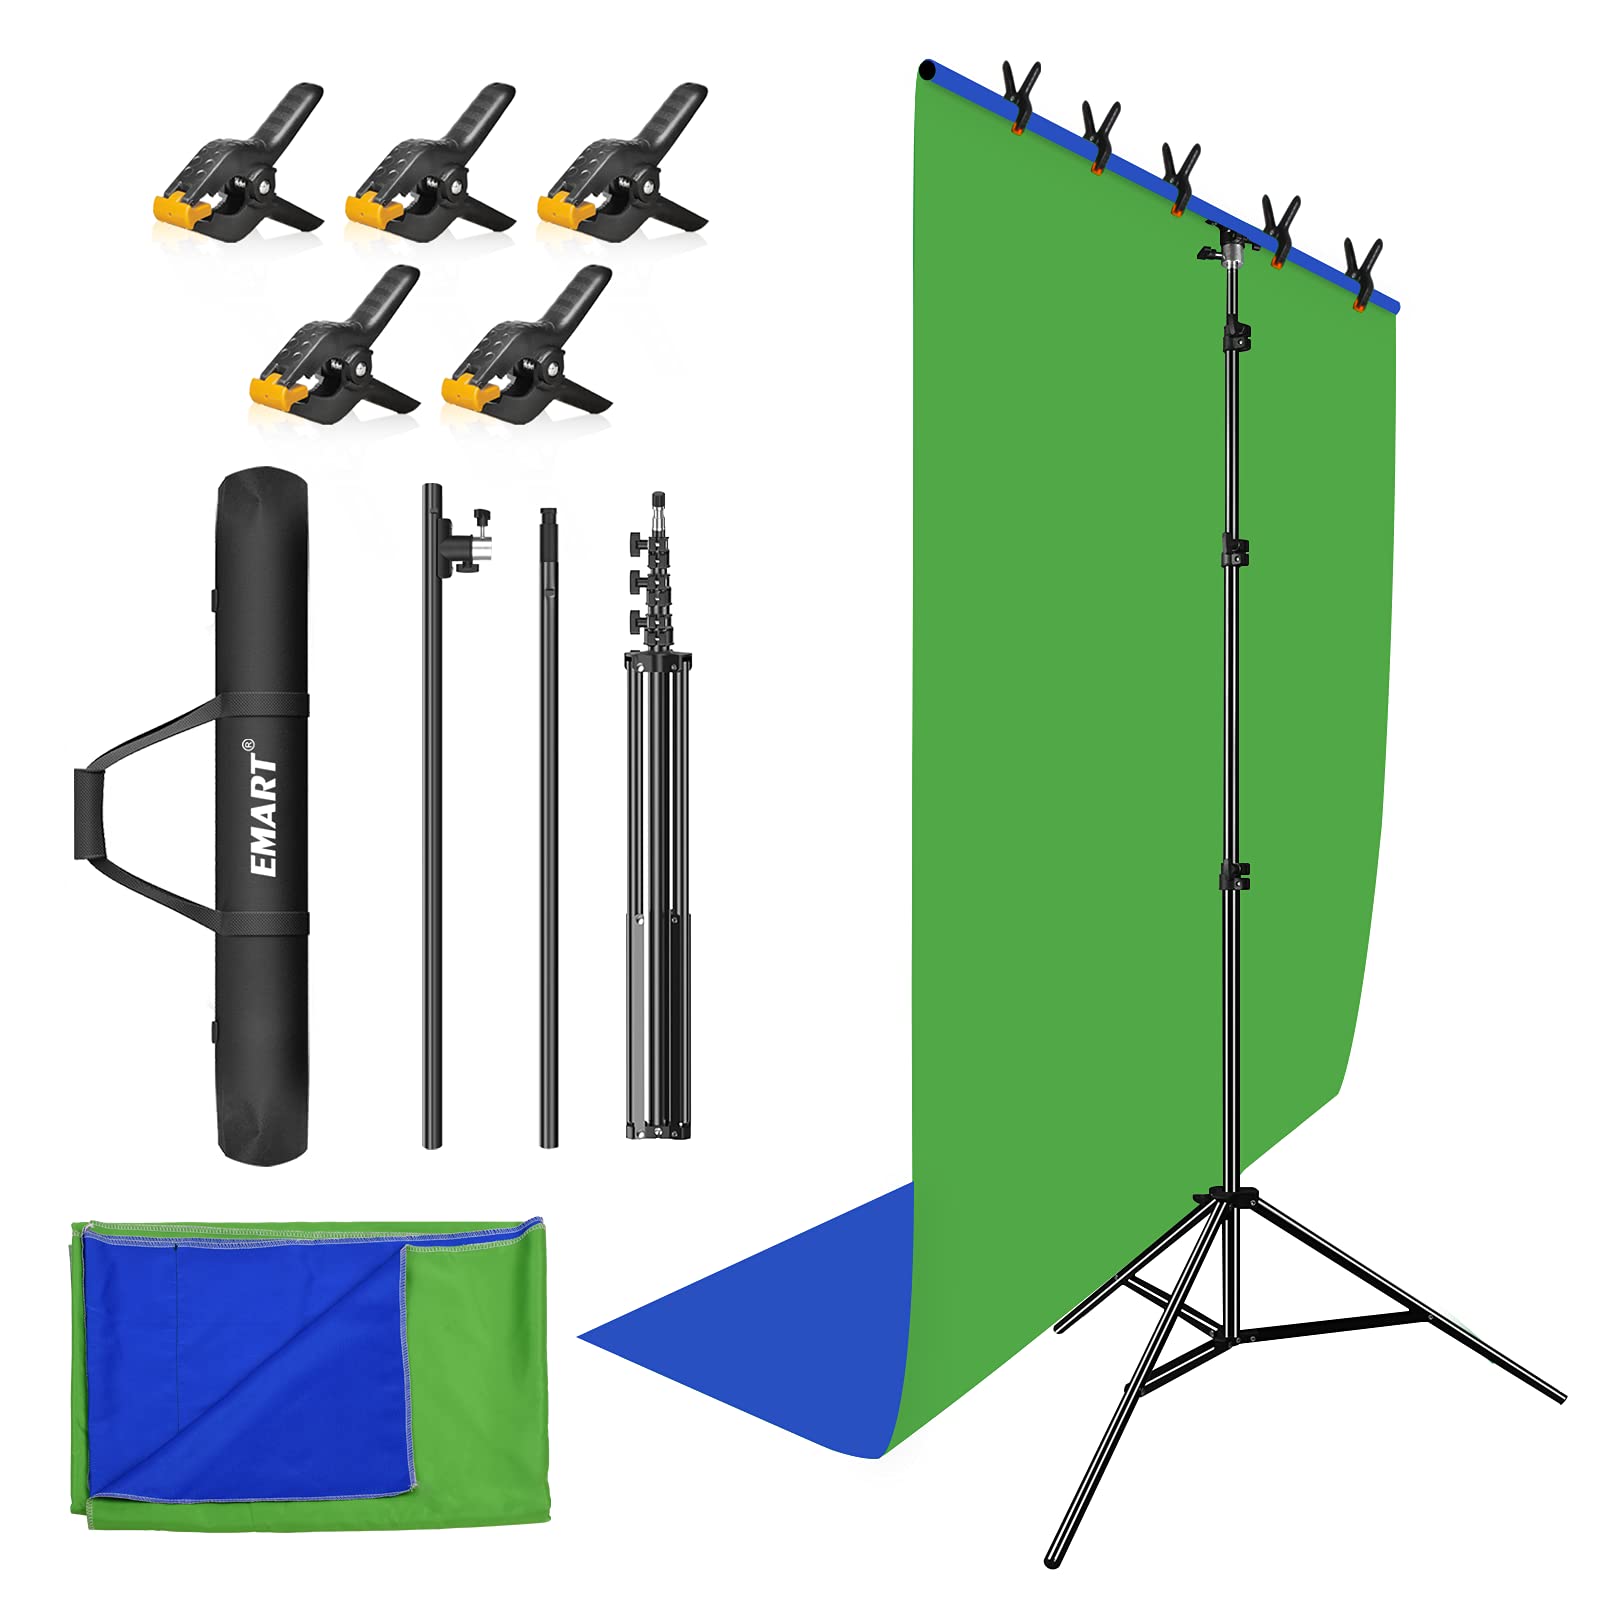 EMART 2 in 1 Grüner und Blauer Hintergrund Ständer, 1,5X2,6 m Tragbarer Hintergrund Ständer mit Chromakey für Fotografie, Zoom, Spiele, Video im Fotostudio